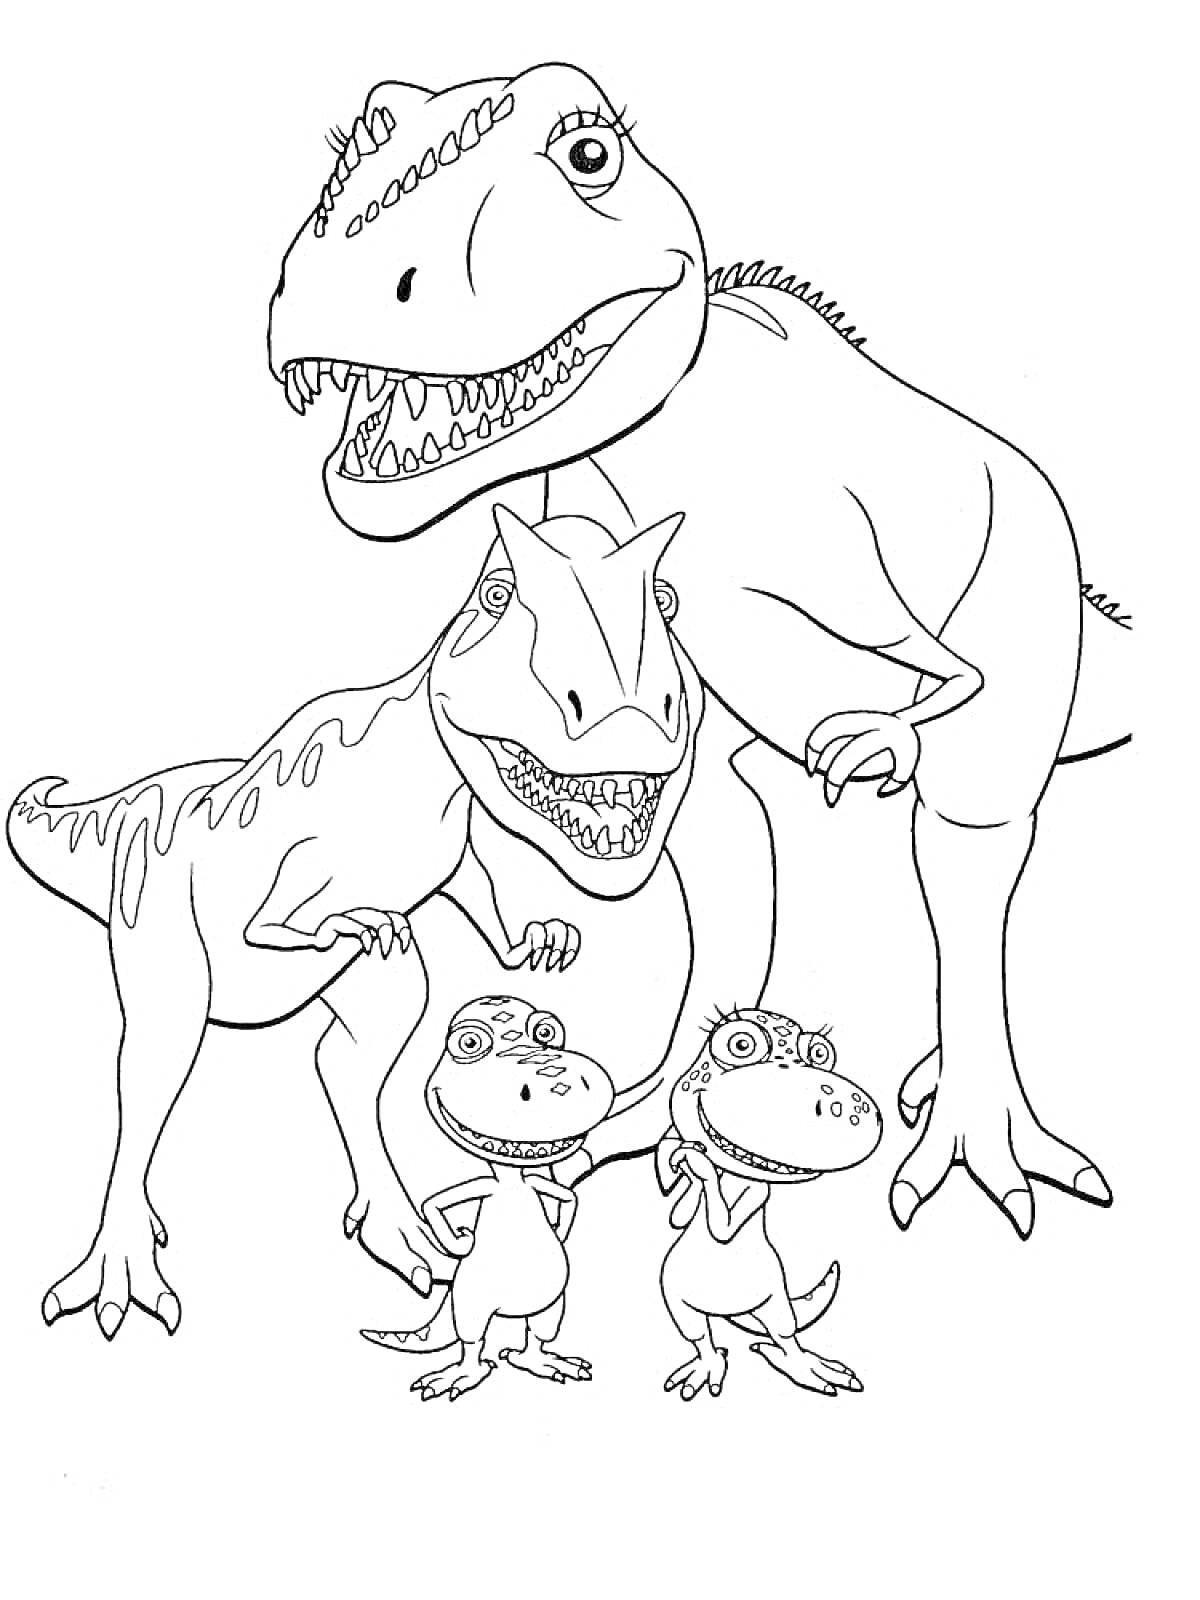 Раскраска Динозавры - большая взрослая особь с двумя детёнышами